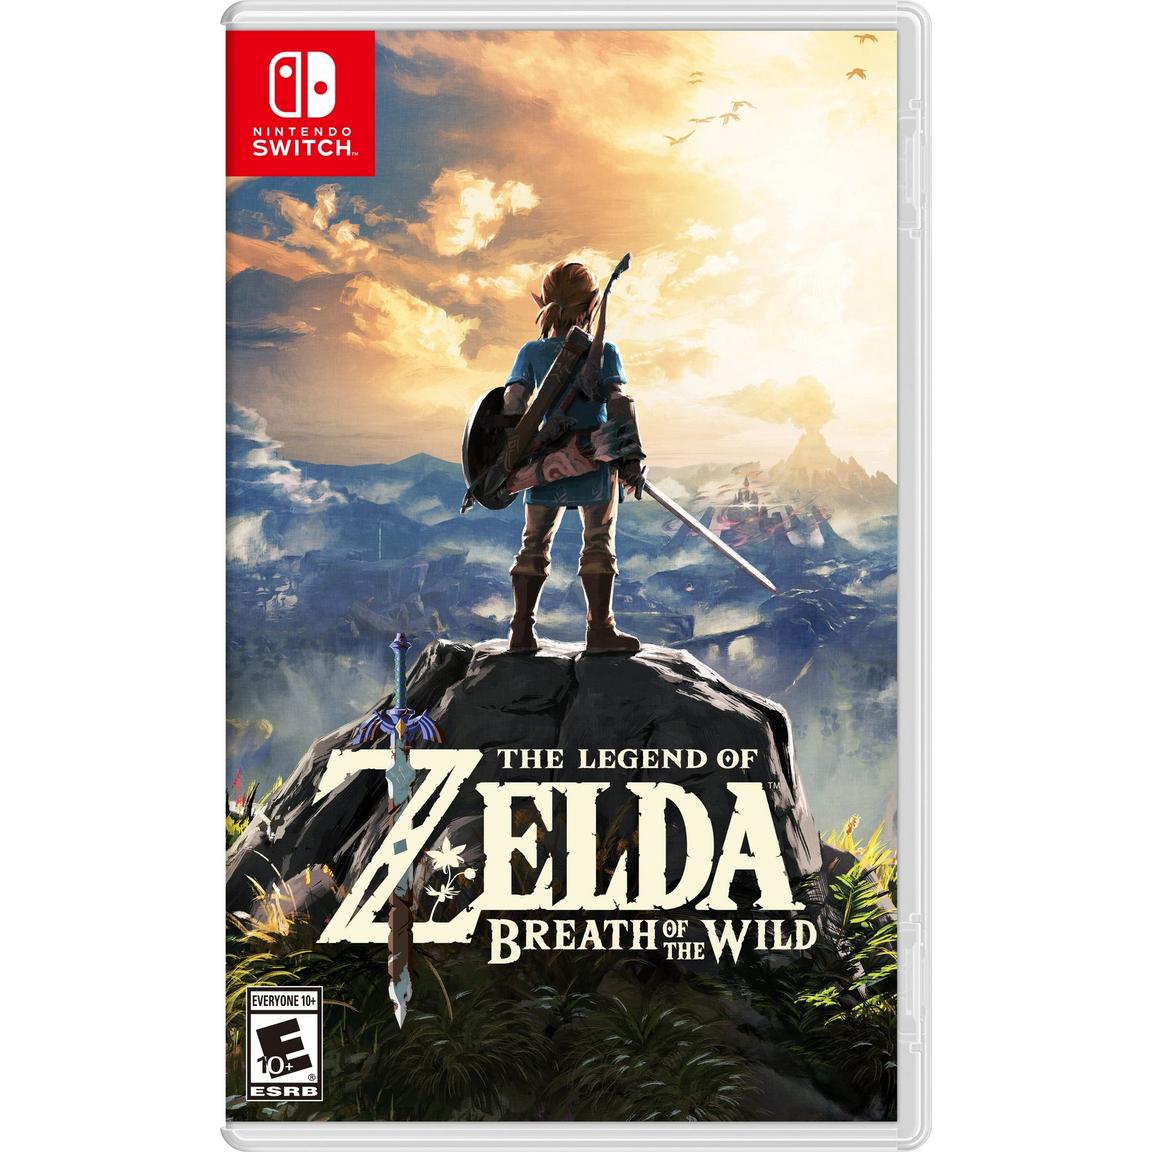 Видеоигра The Legend of Zelda: Breath of the Wild - Nintendo Switch цена и фото